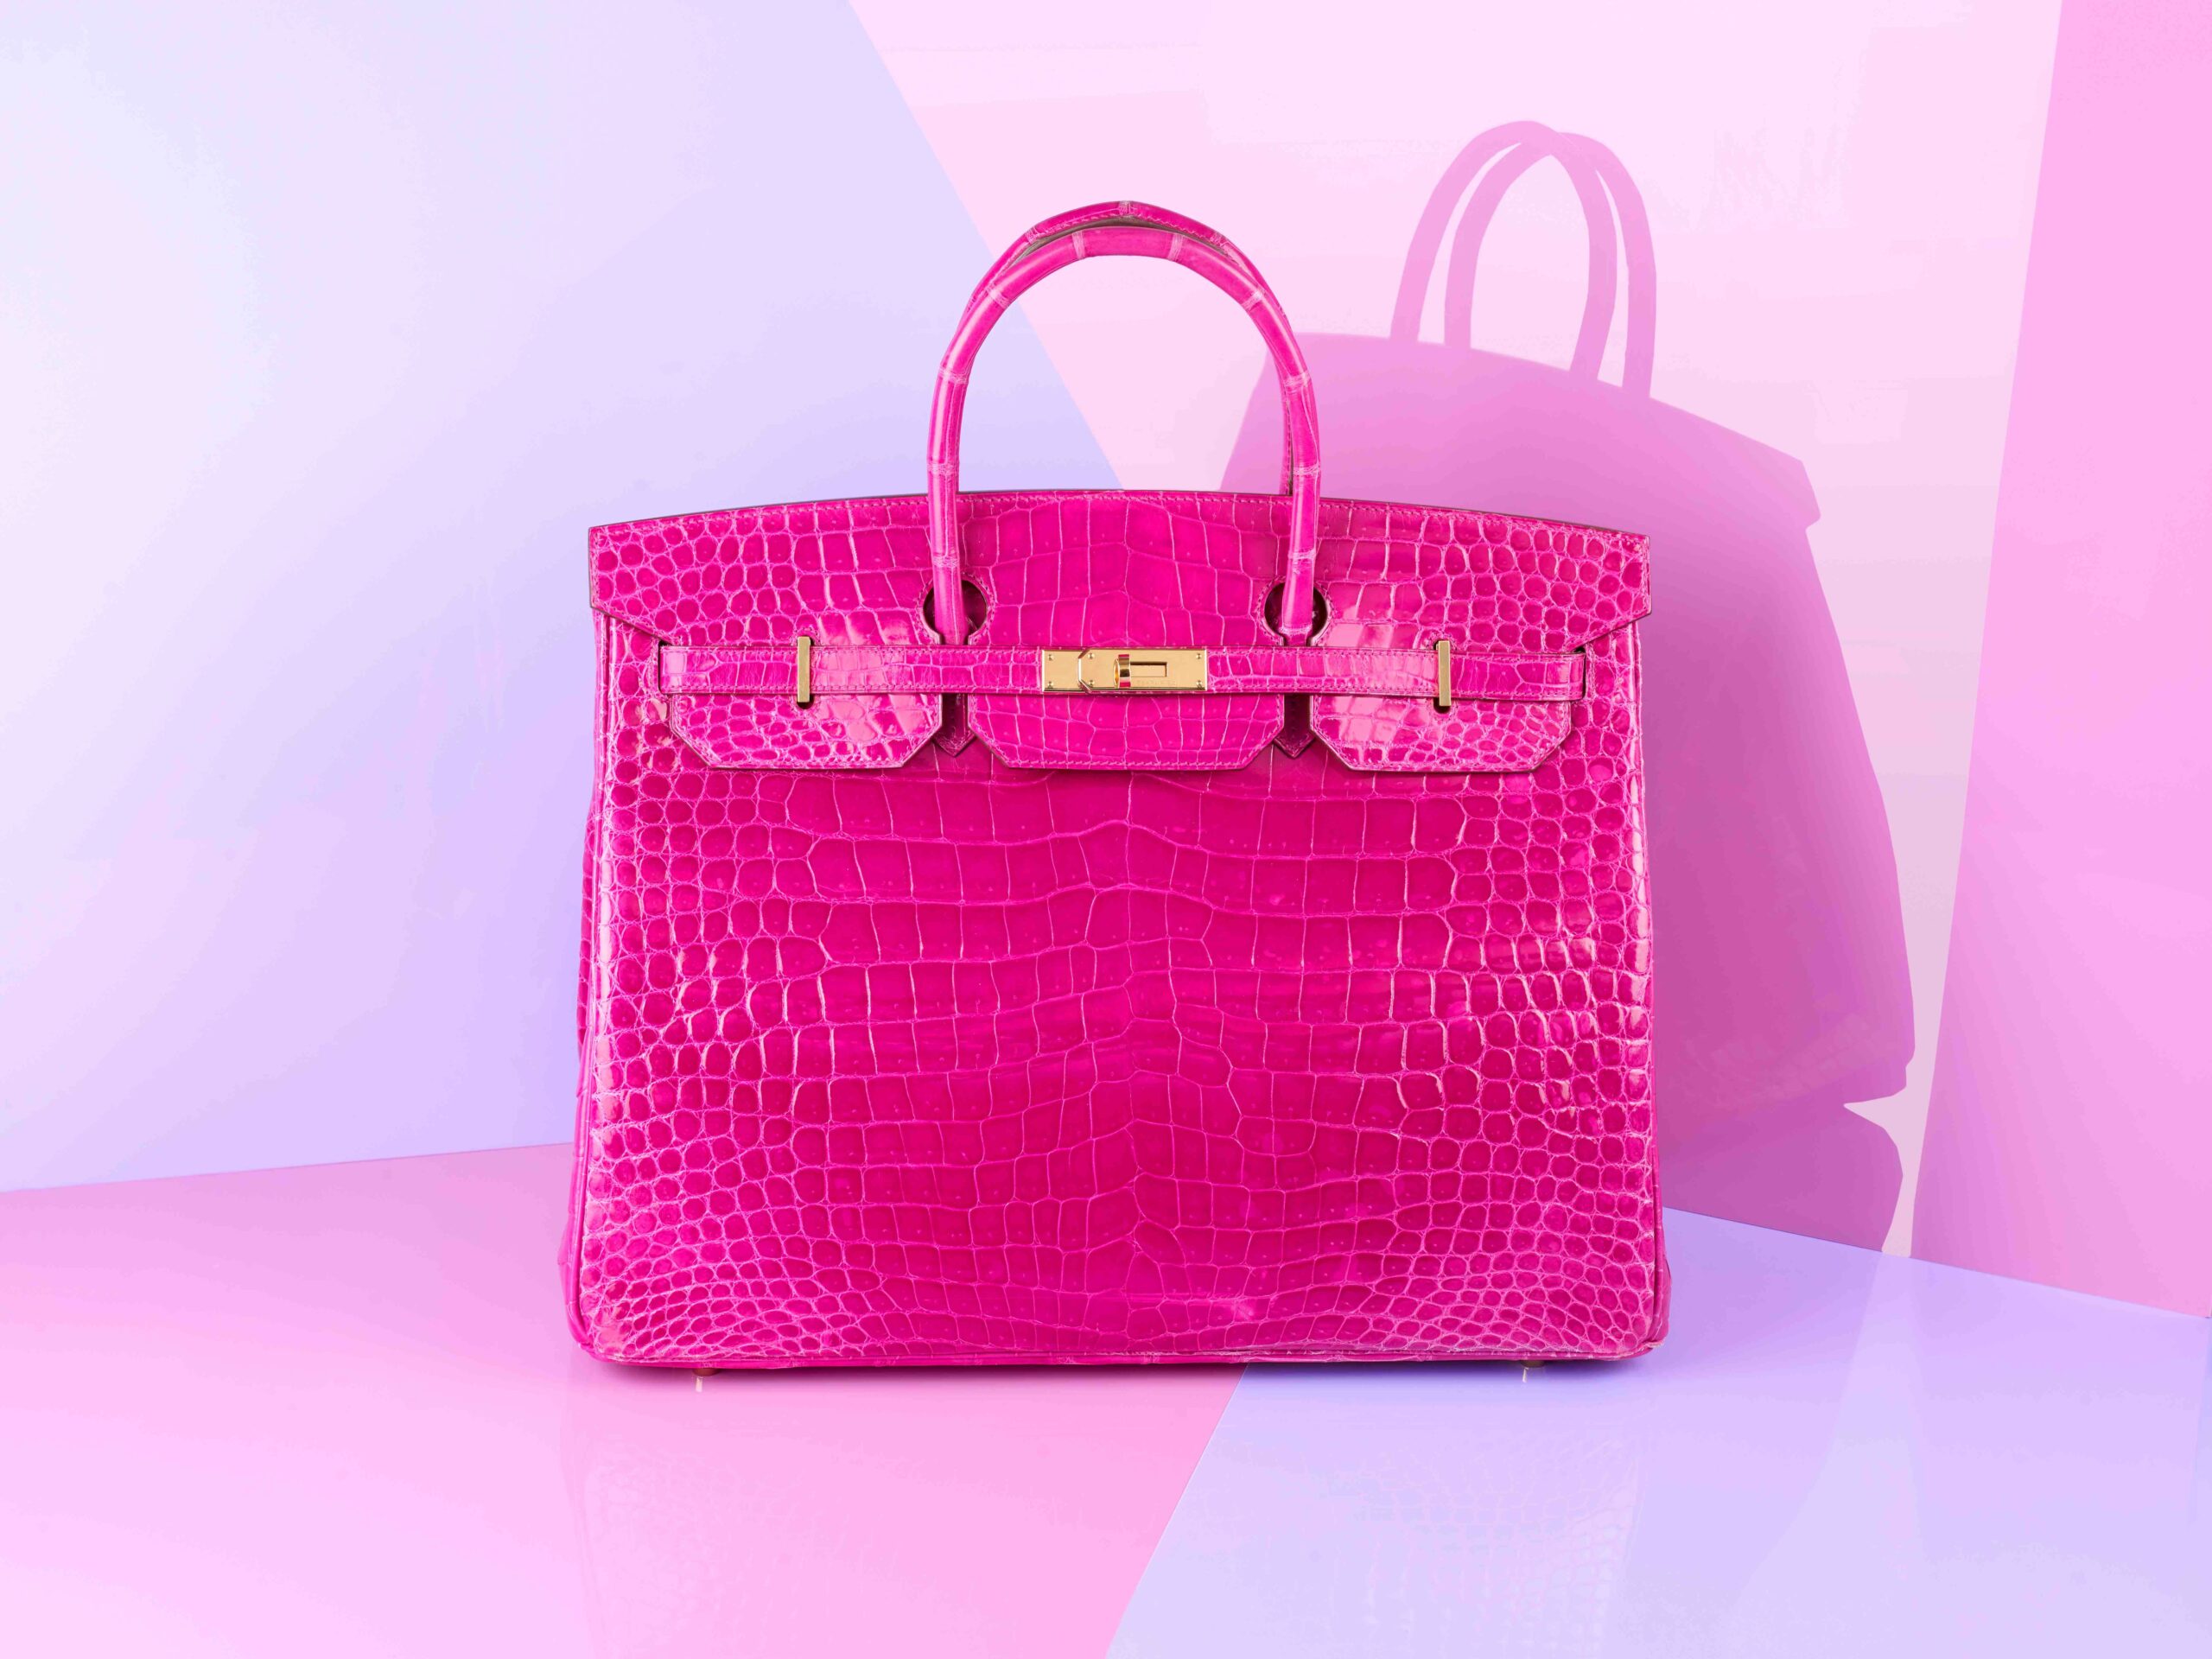 Pink Hermès Birkin handbag sells for just under £20,000 at UK auction